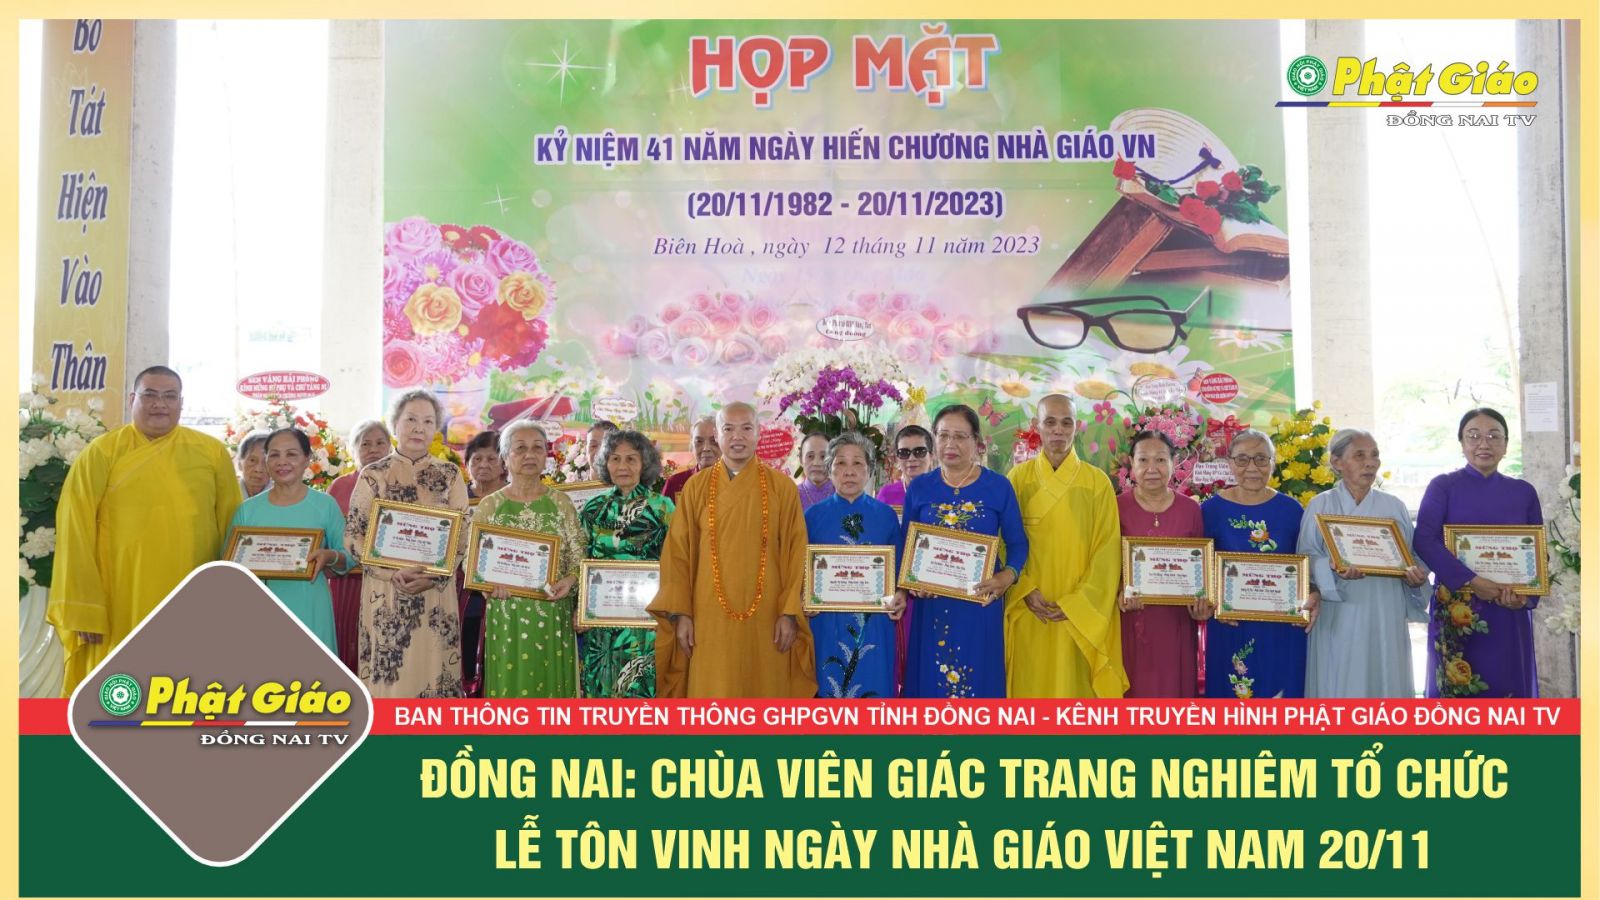 [Video] Đồng Nai: Chùa Viên Giác Tp. Biên Hòa trang nghiêm tổ chức lễ Tôn vinh ngày Nhà giáo Việt Nam 20/11